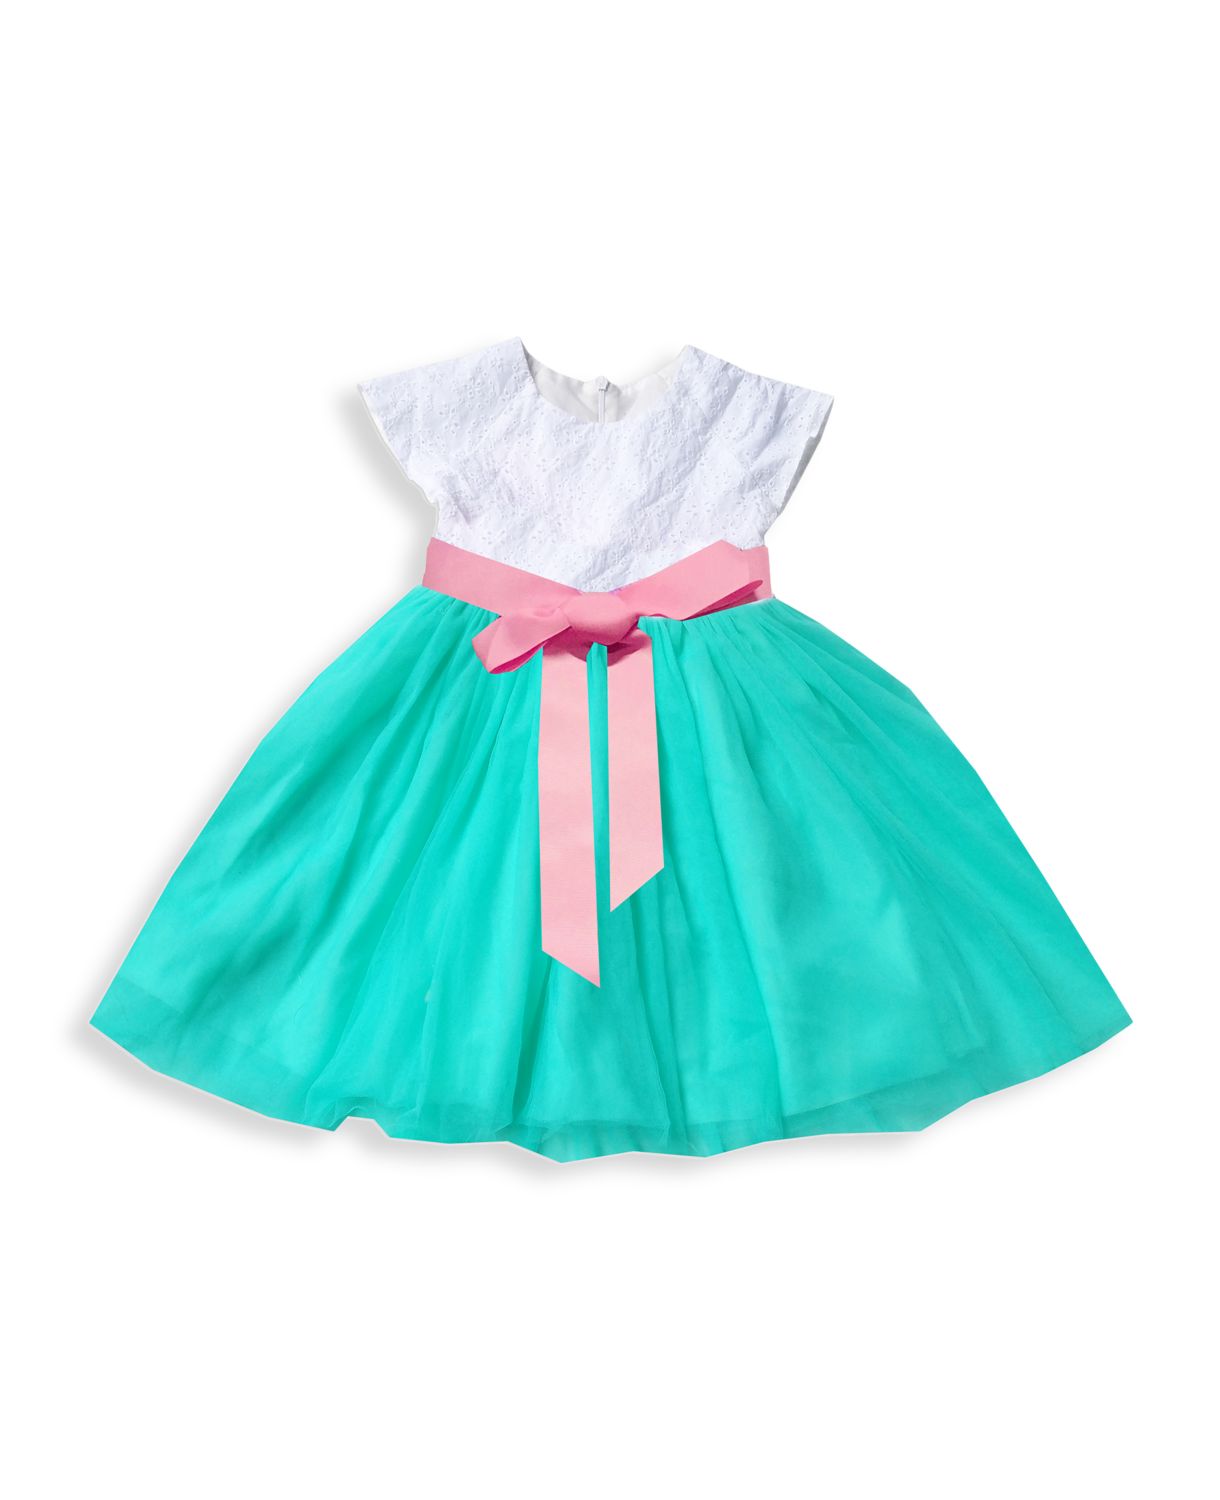 Расклешенное платье Kenzita Aqua Schiffli с поясом и вышивкой для маленькой девочки Joe-Ella